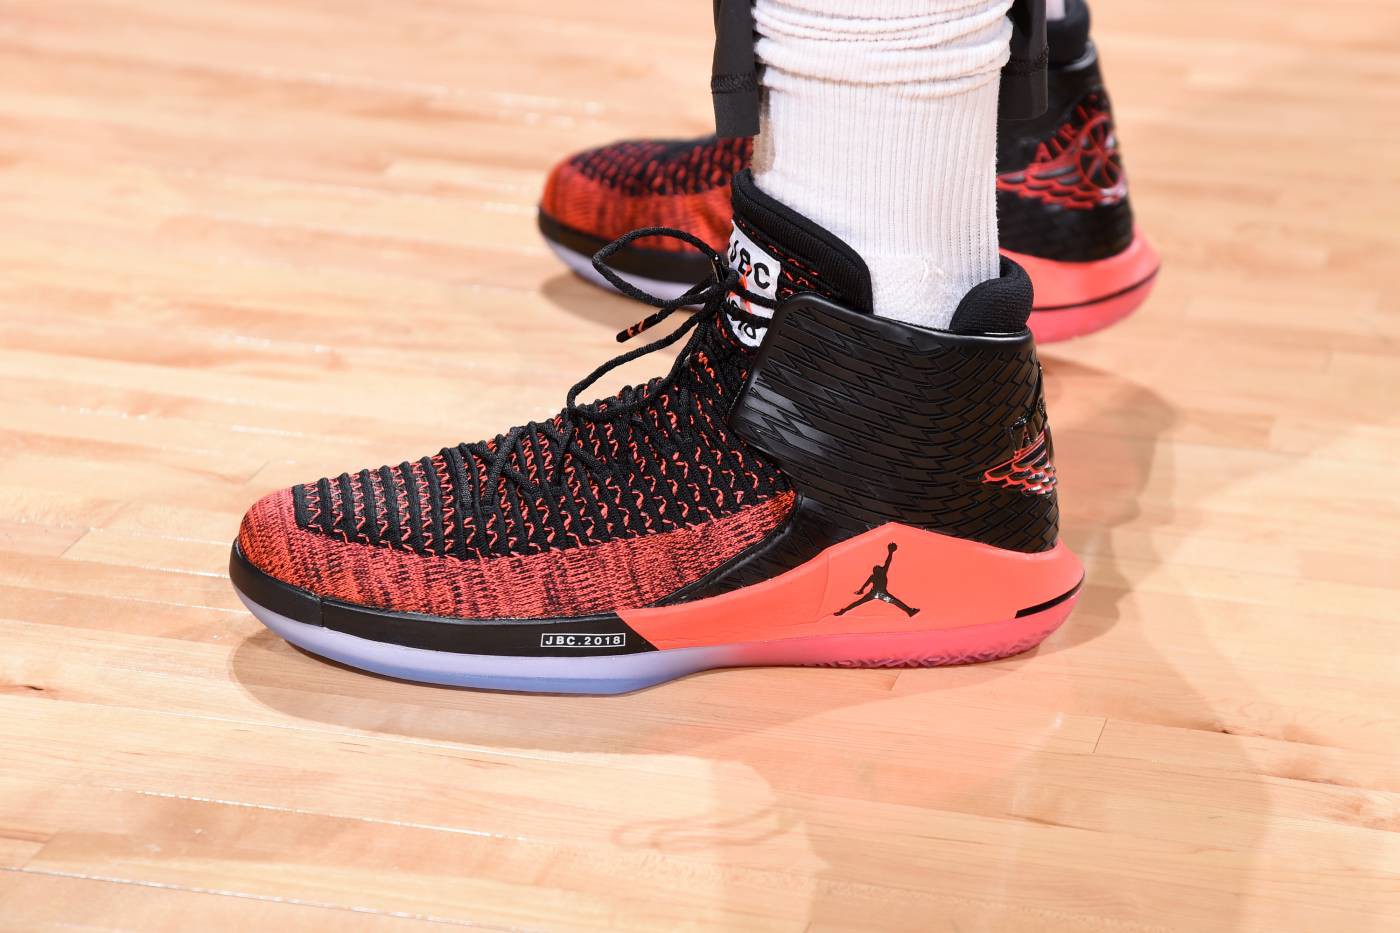 Chi tiết và đầy đủ các mẫu giày khủng của Thánh giày P.J. Tucker tại NBA Playoffs 2018 (kỳ 1) - Ảnh 10.